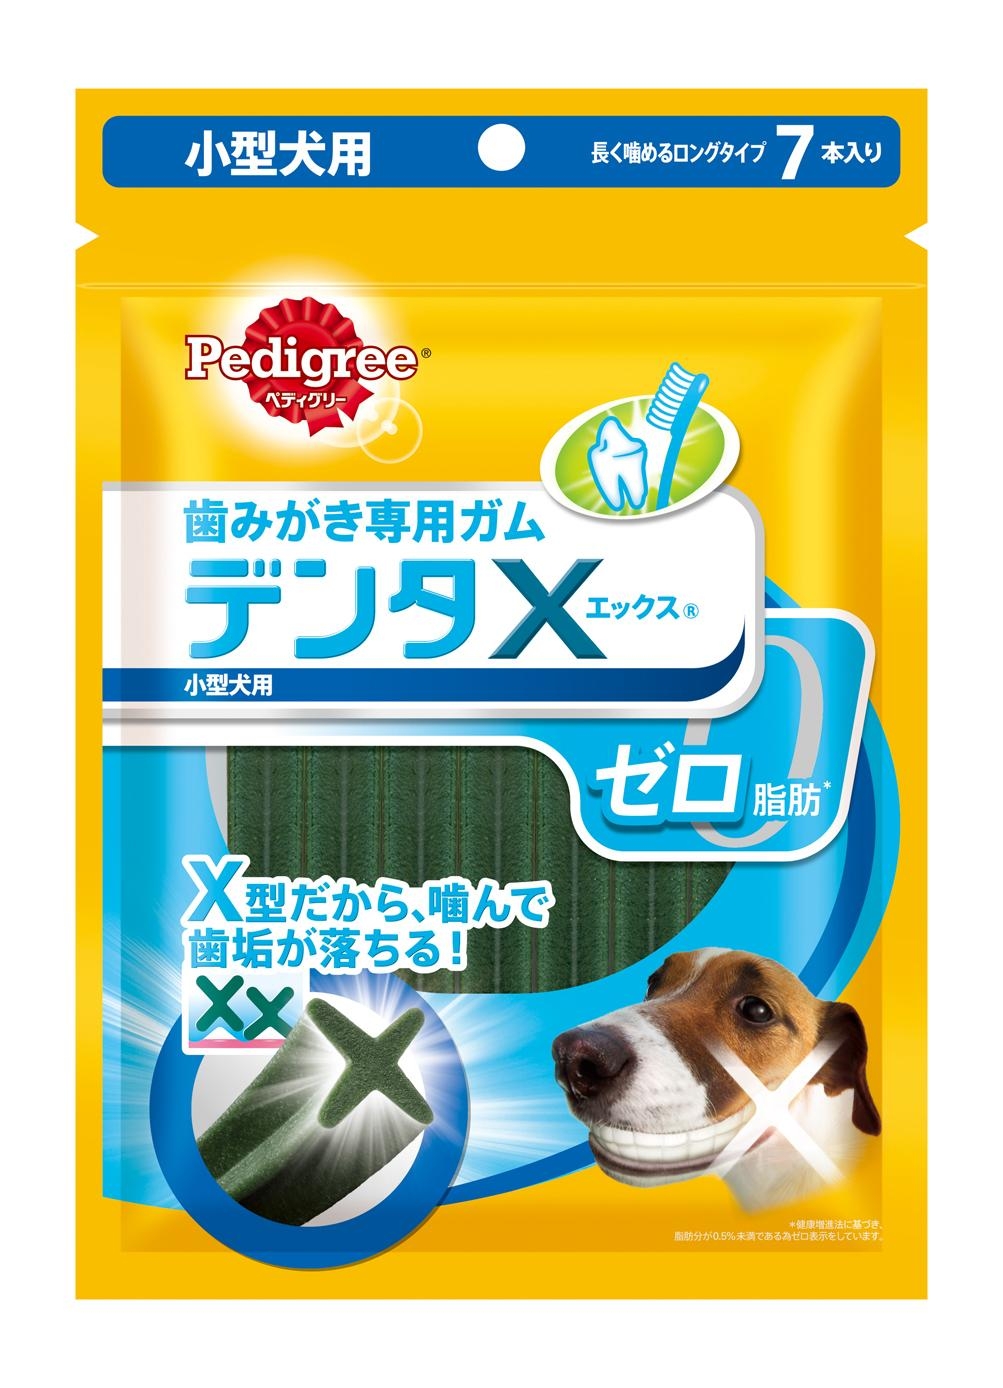 犬用歯みがきガムに脂肪ゼロガムとシニア犬でも噛みやすいガム登場 マース ジャパン リミテッドのプレスリリース